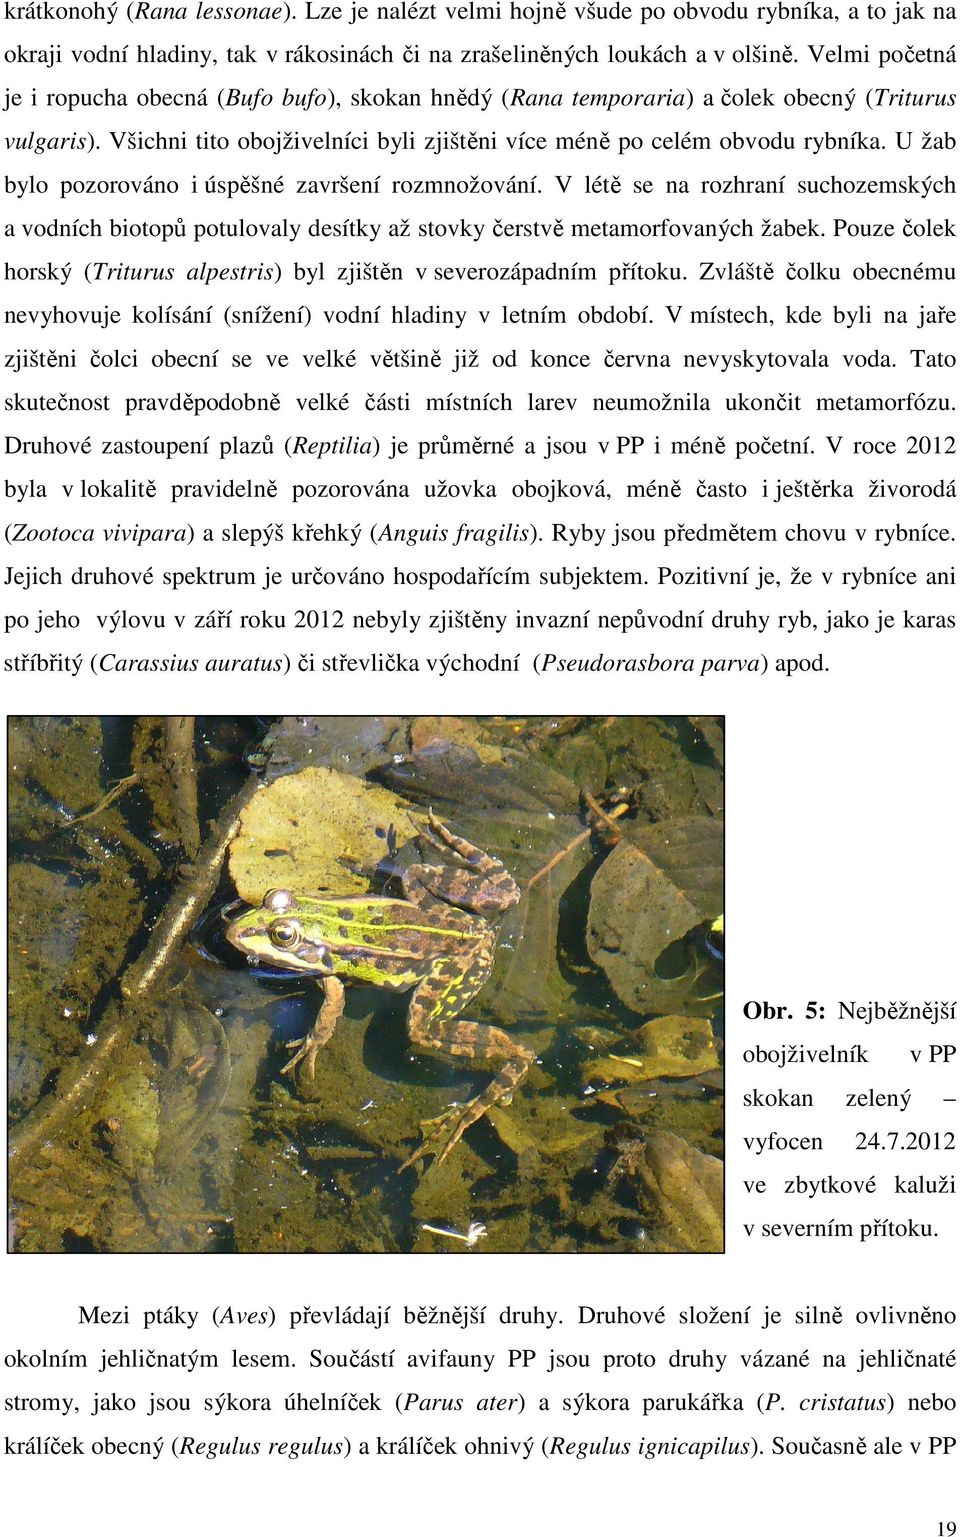 U žab bylo pozorováno i úspěšné završení rozmnožování. V létě se na rozhraní suchozemských a vodních biotopů potulovaly desítky až stovky čerstvě metamorfovaných žabek.